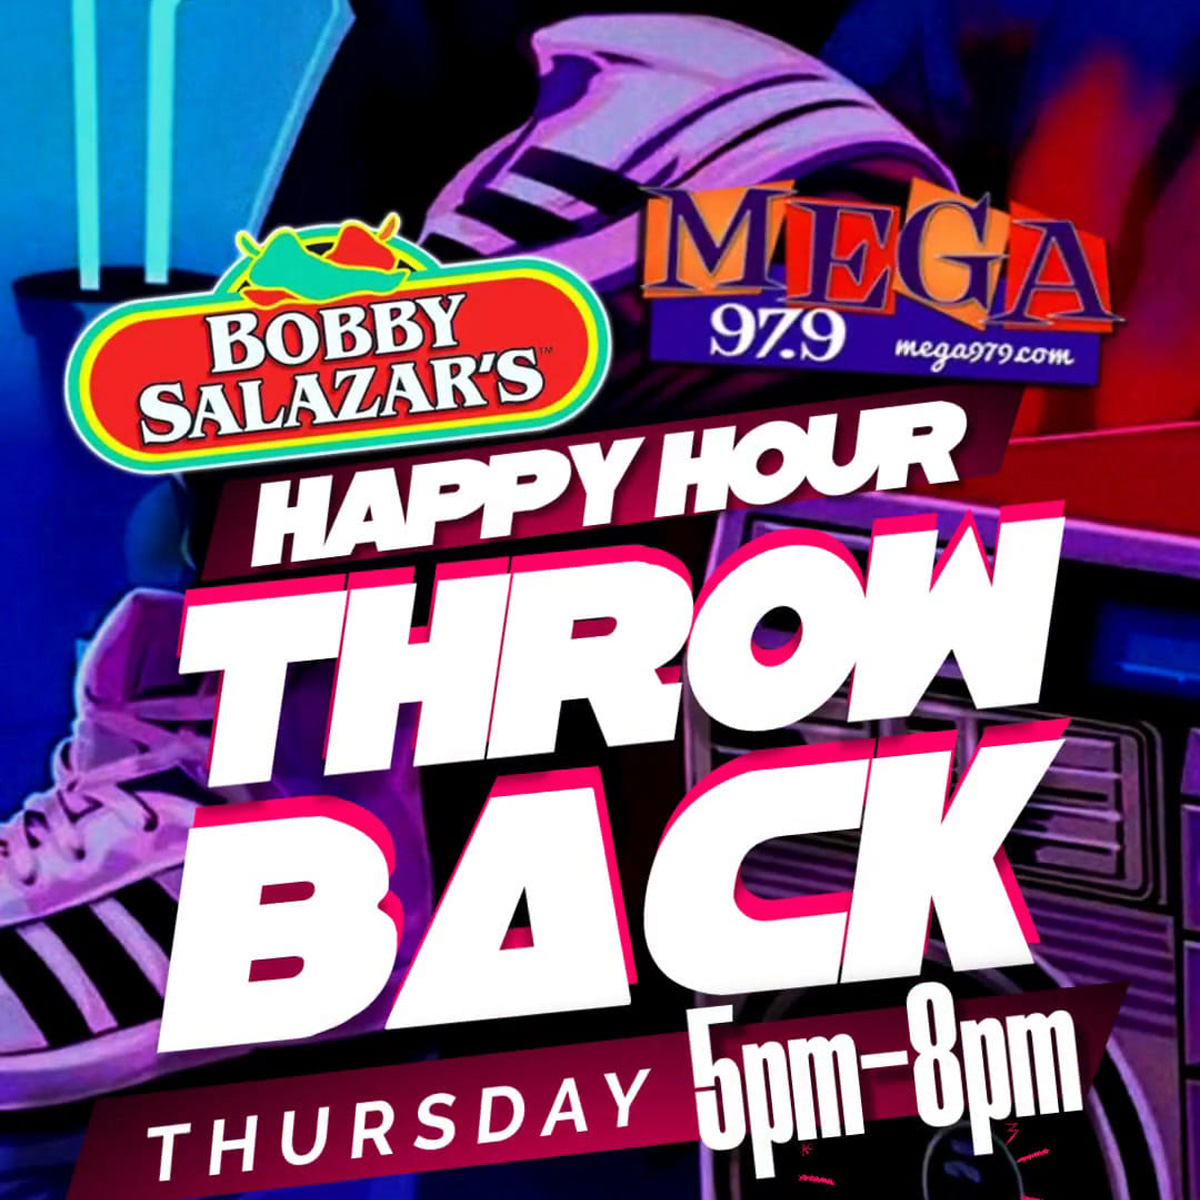 Happy Hour Throwback at Bobby Salazar’s – Thursdays